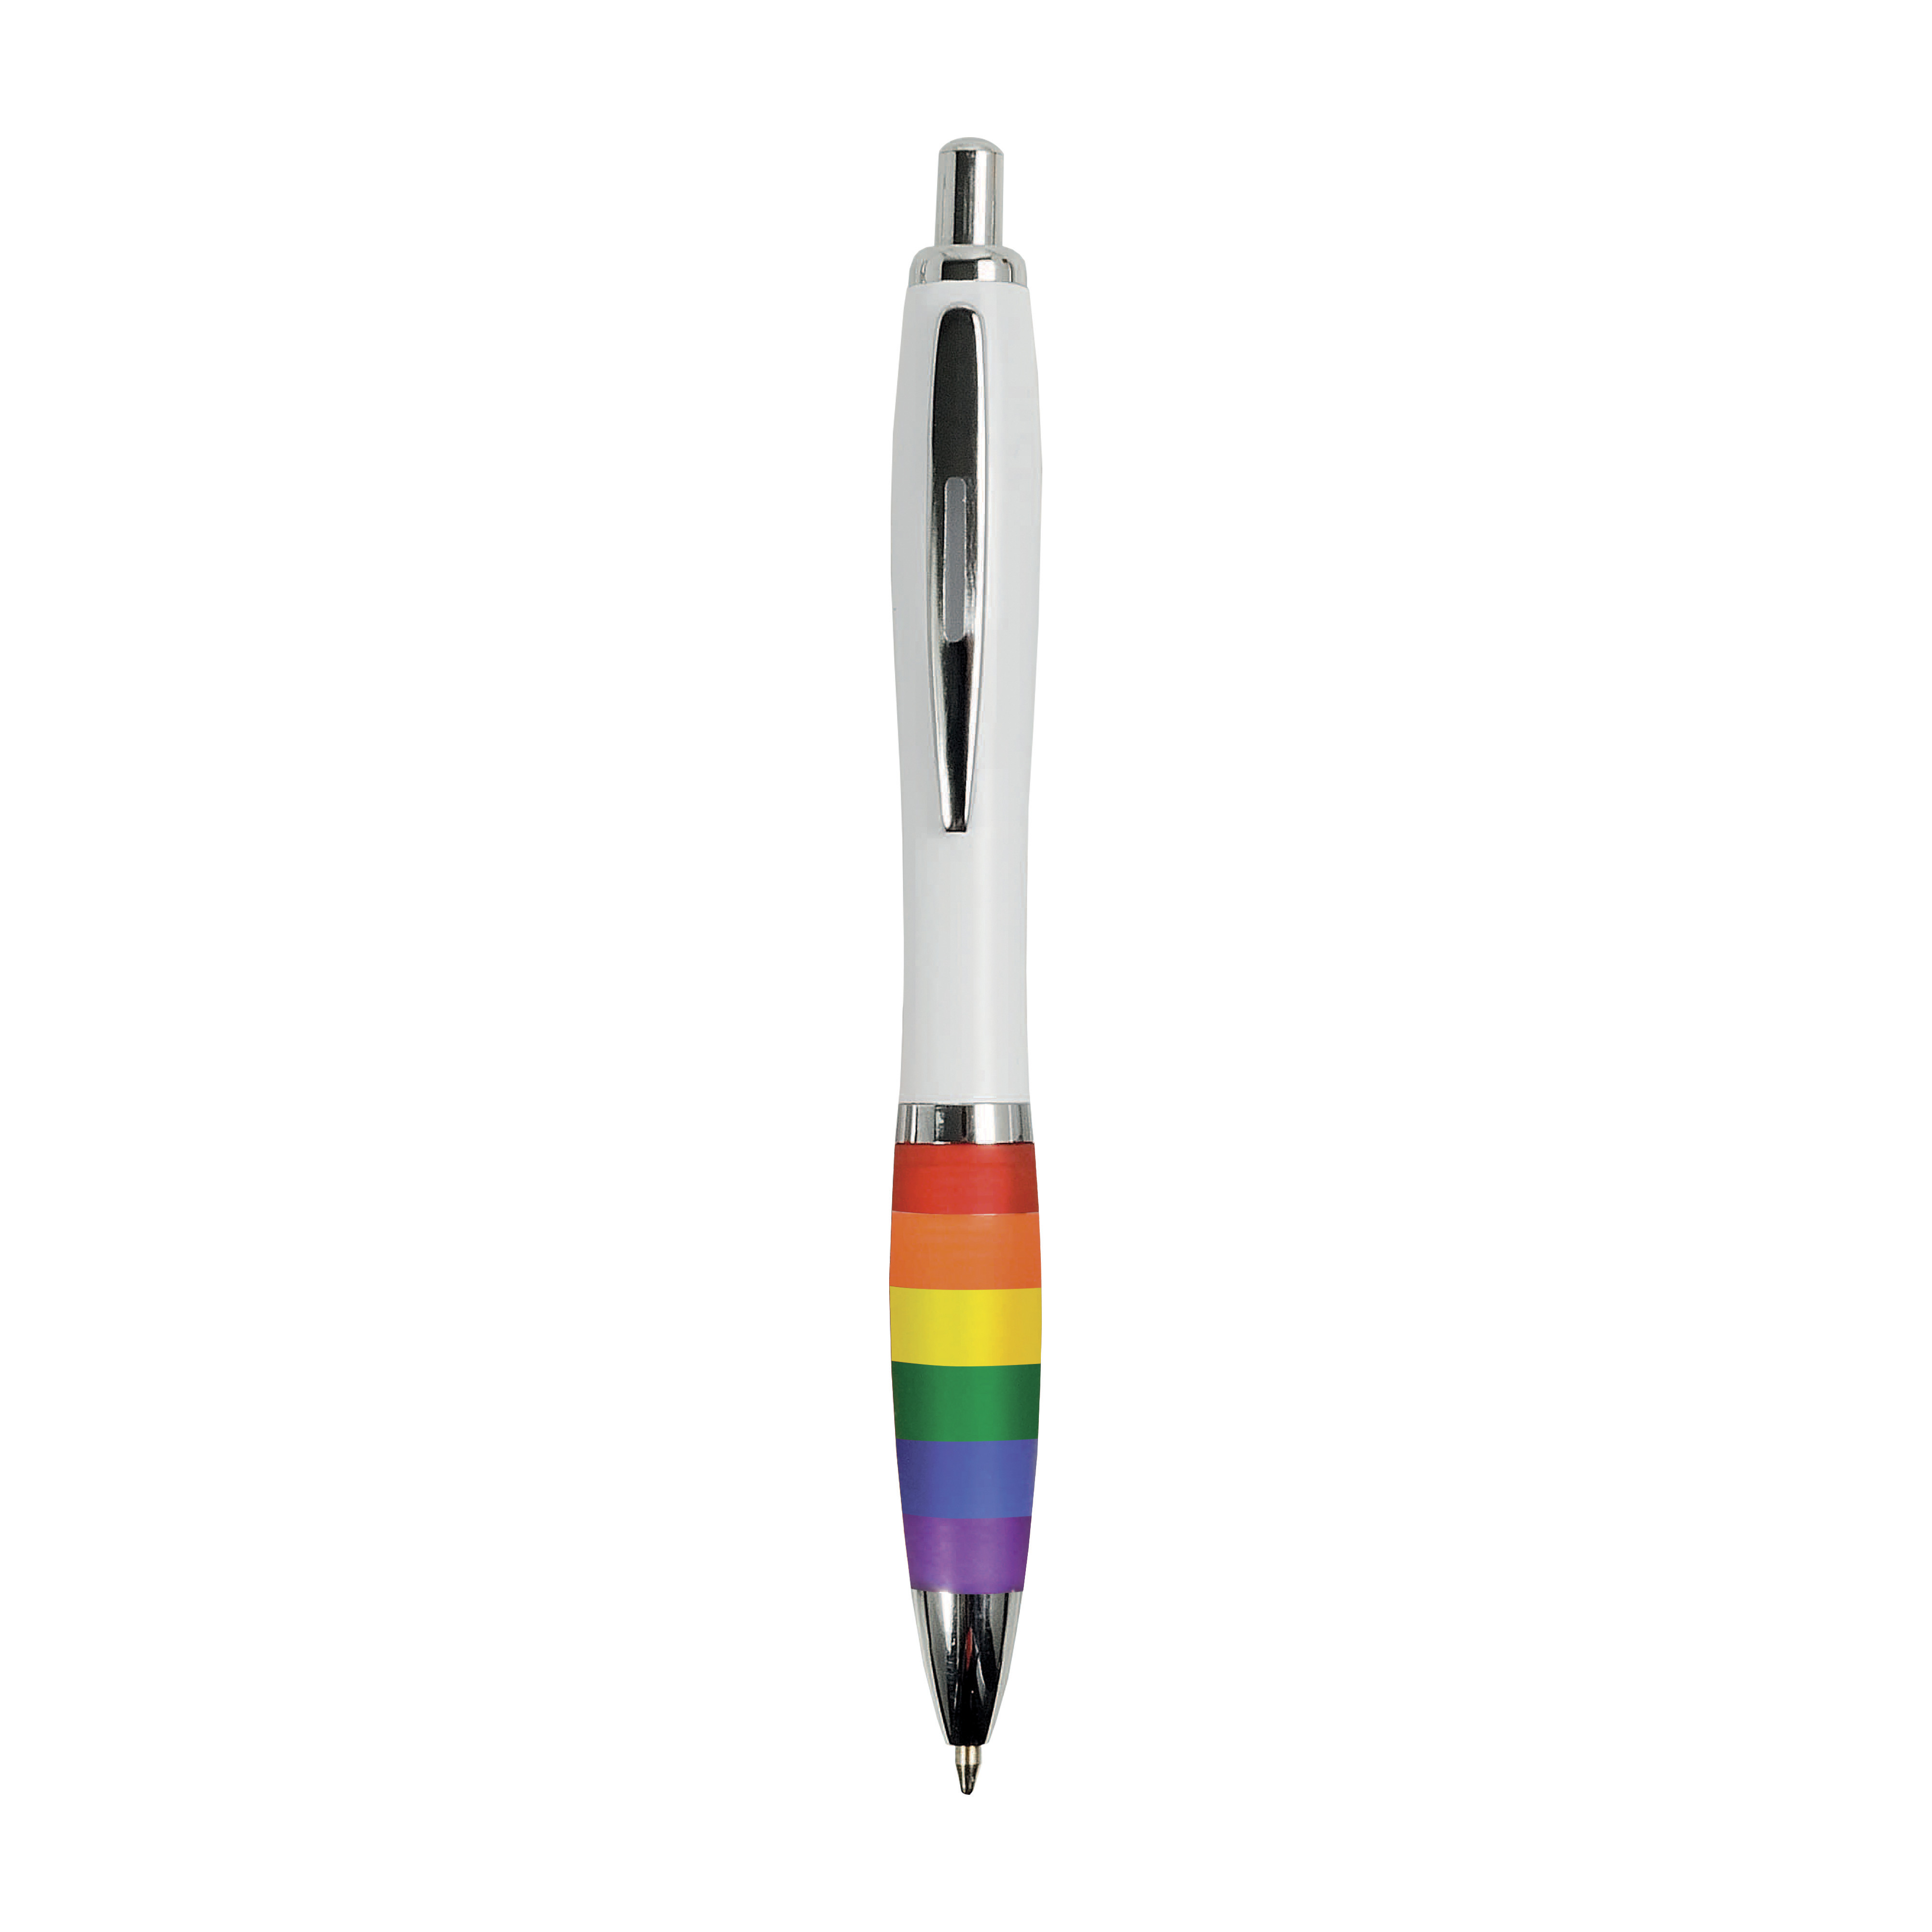 Penna a scatto in plastica resistente plastica ABS, con fusto bianco, impugnatura arcobaleno gommata